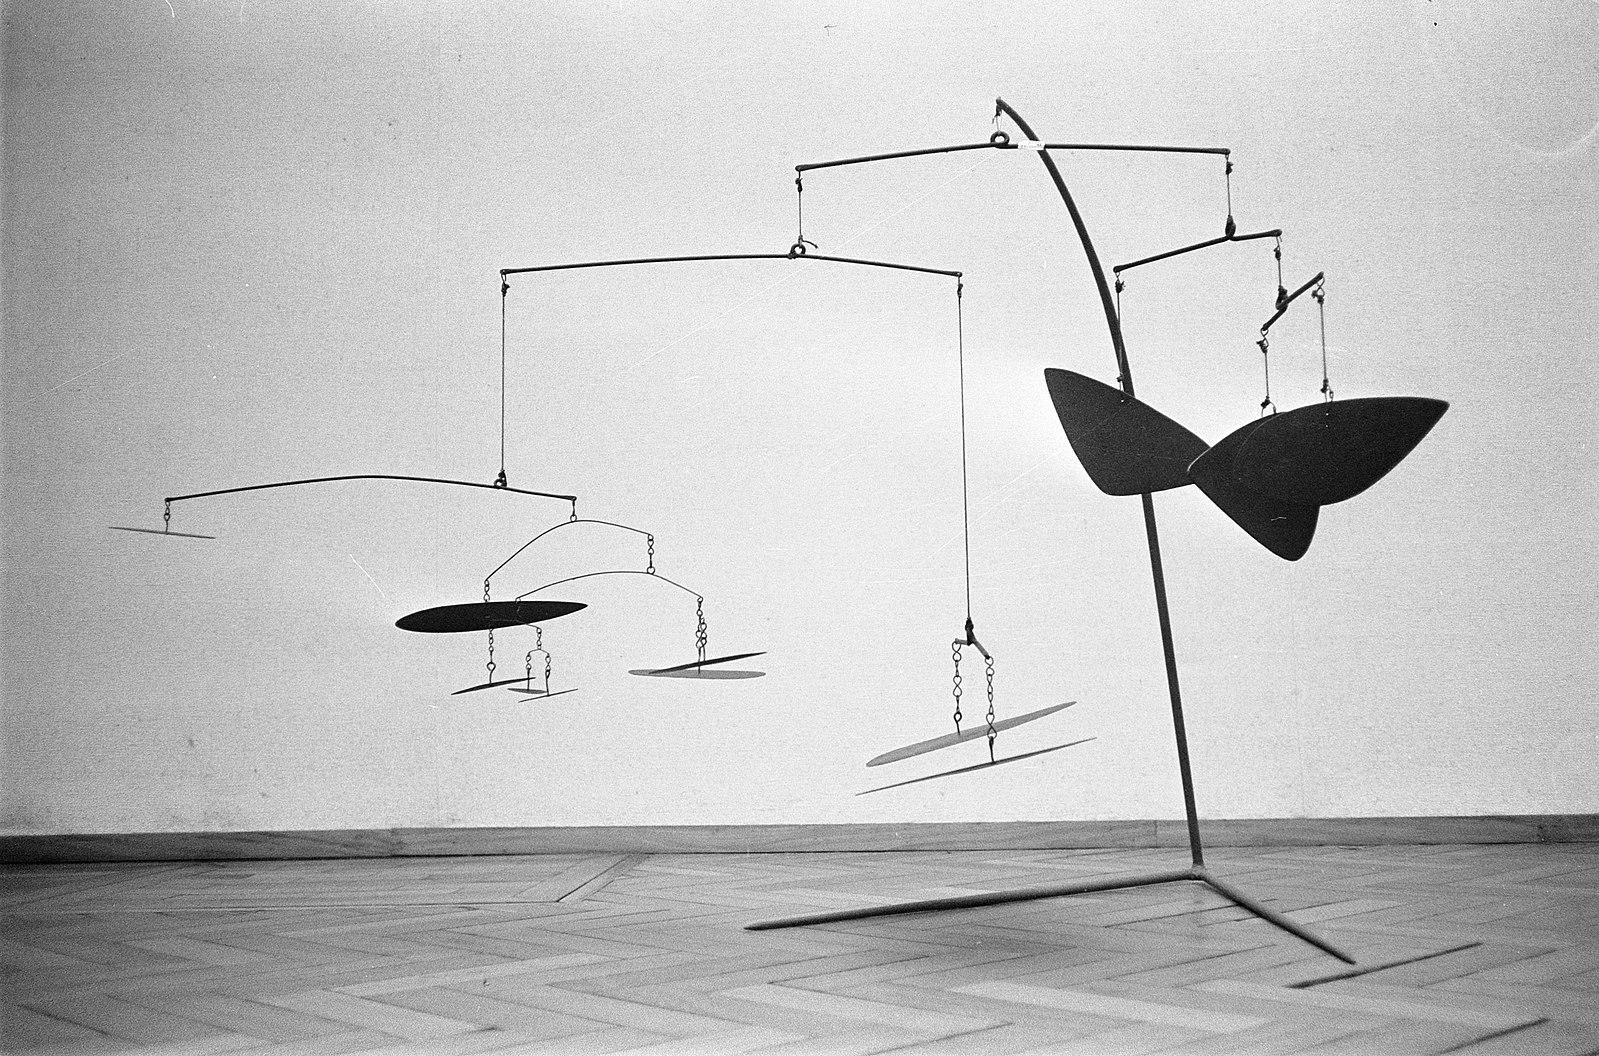 Example of an Alexander Calder mobile